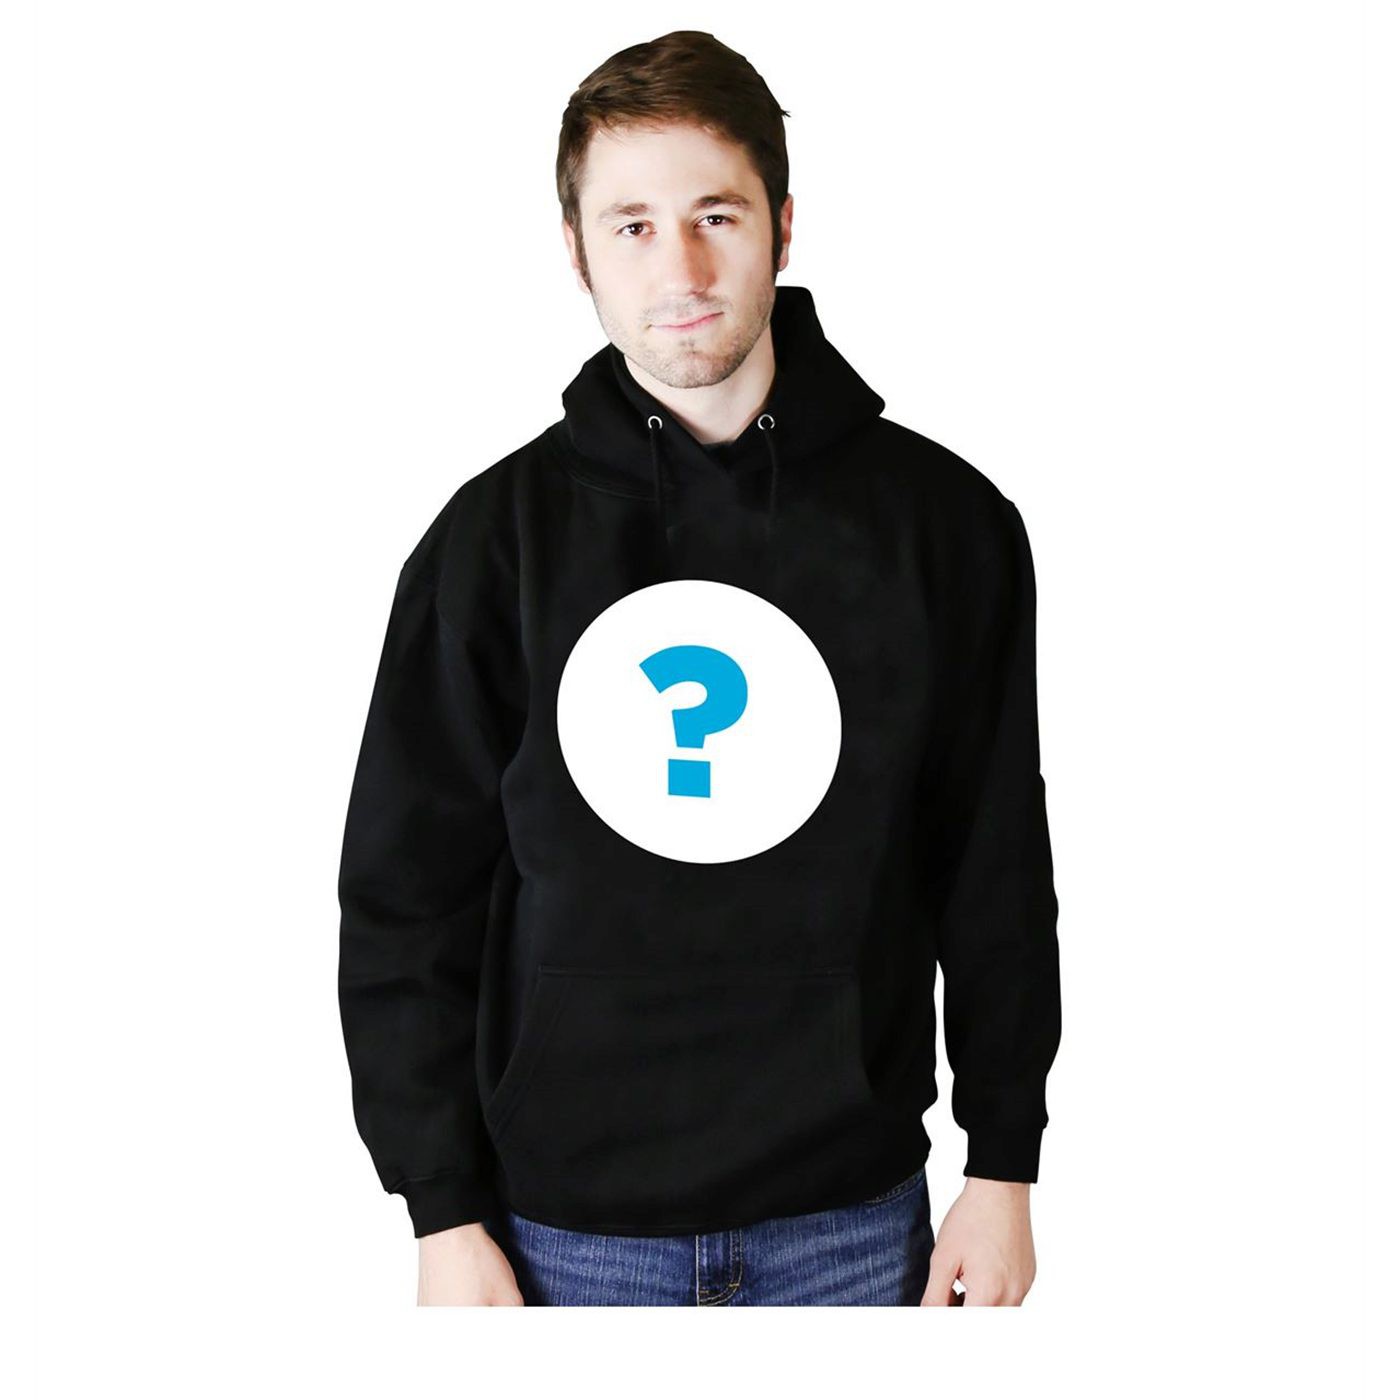 Superhero Mystery Men's Hoodie, Sweater or Sweatshirt